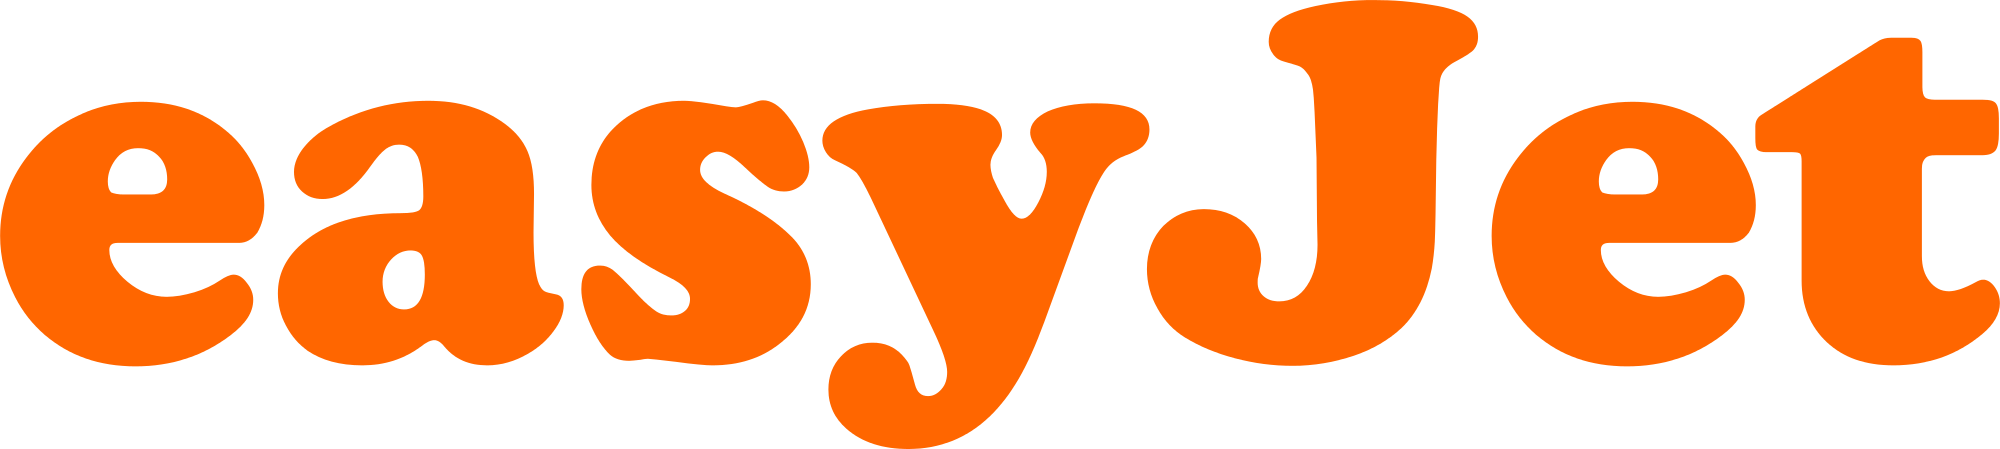 jetstar-vector-logo